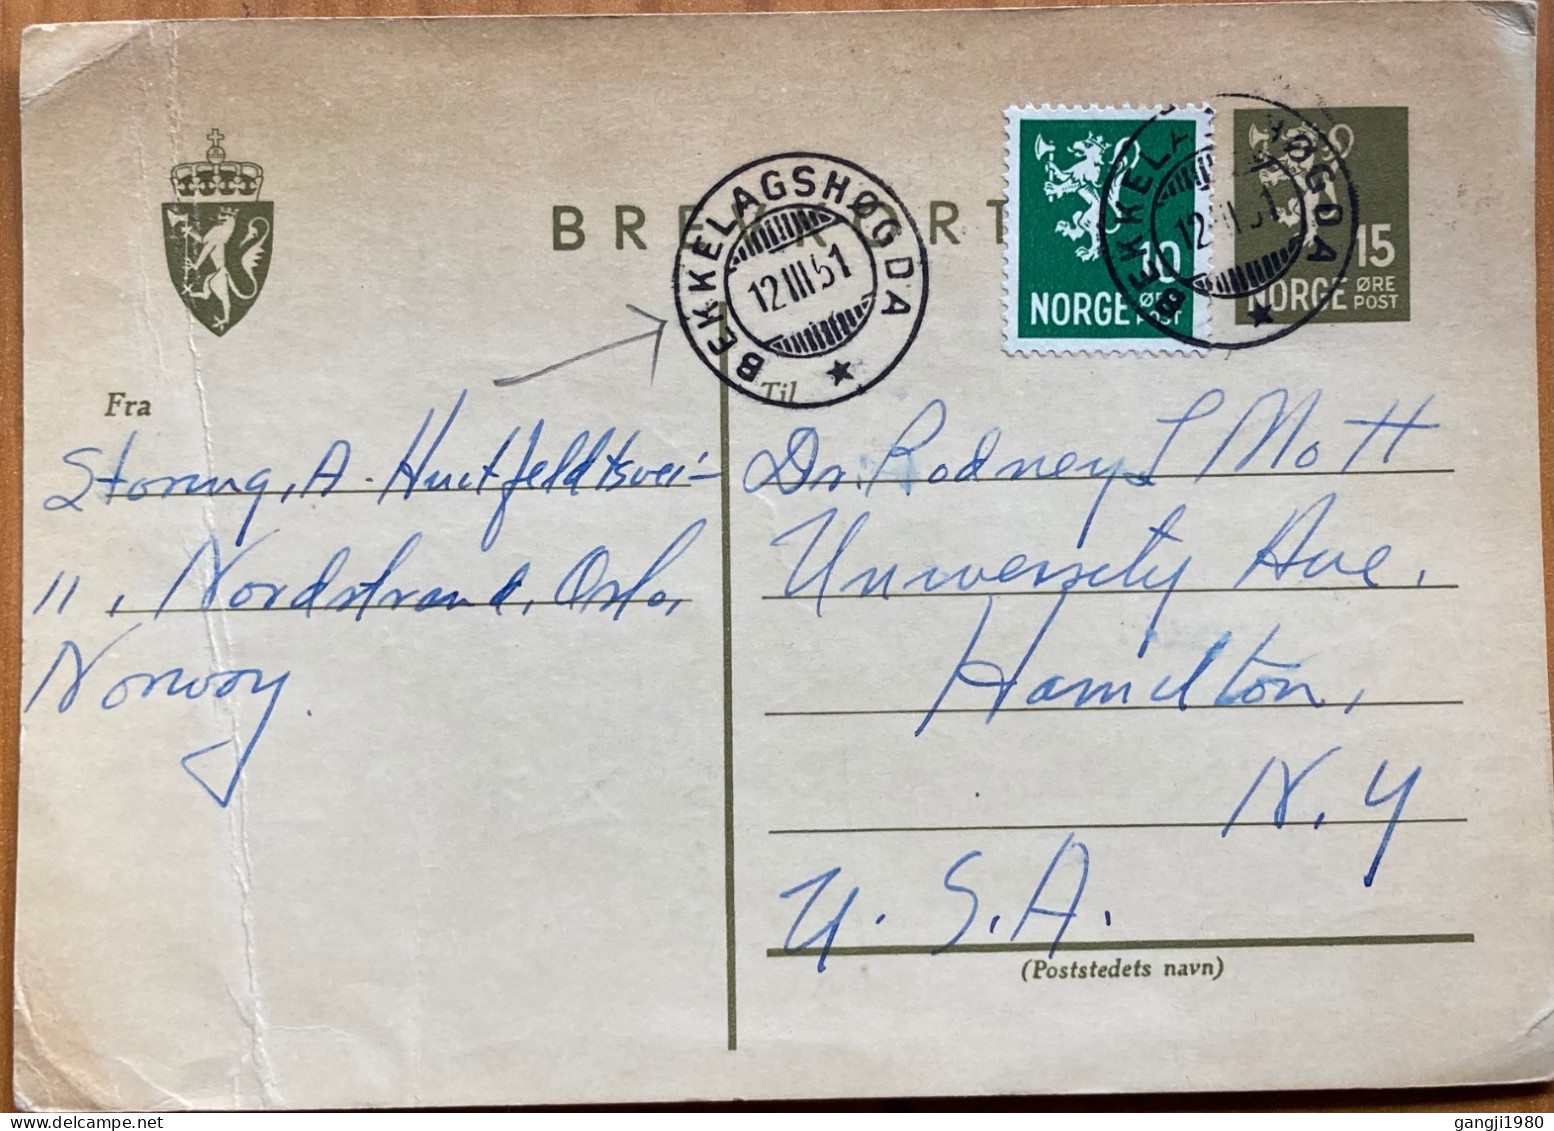 NORWAY 1951, POSTAL STATIONERY CARD, ILLUSTRATE, LION RAMPANT, USED TO USA, BEKKELAGSHOGDA CITY CANCEL. - Lettres & Documents